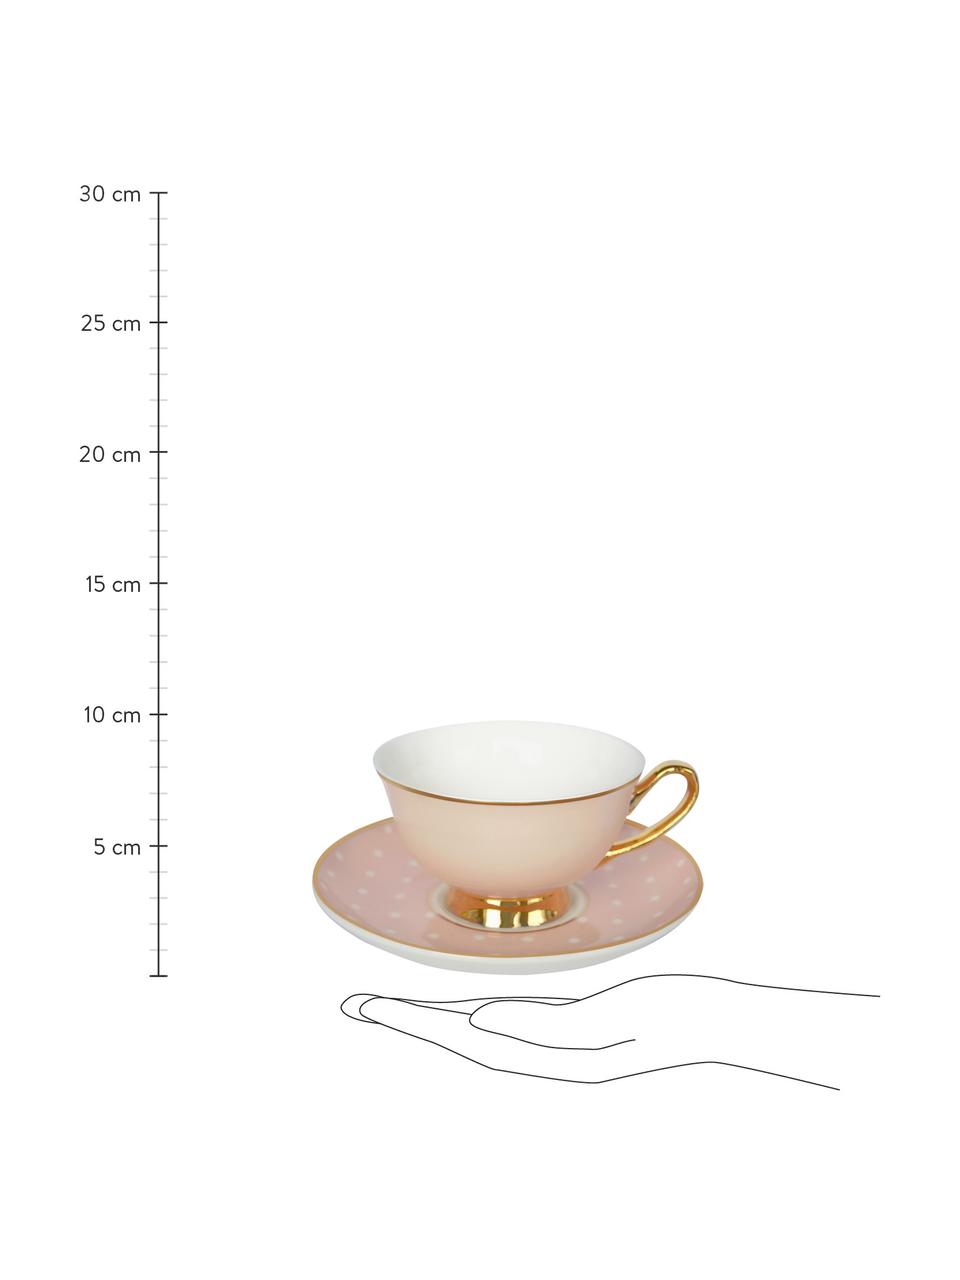 Filiżanka do herbaty ze spodkiem Spotty, Bone China (porcelana kostna), pozłacany, Blady różowy, biały Krawędź i uchwyt: złoty, Ø 15 x W 6 cm